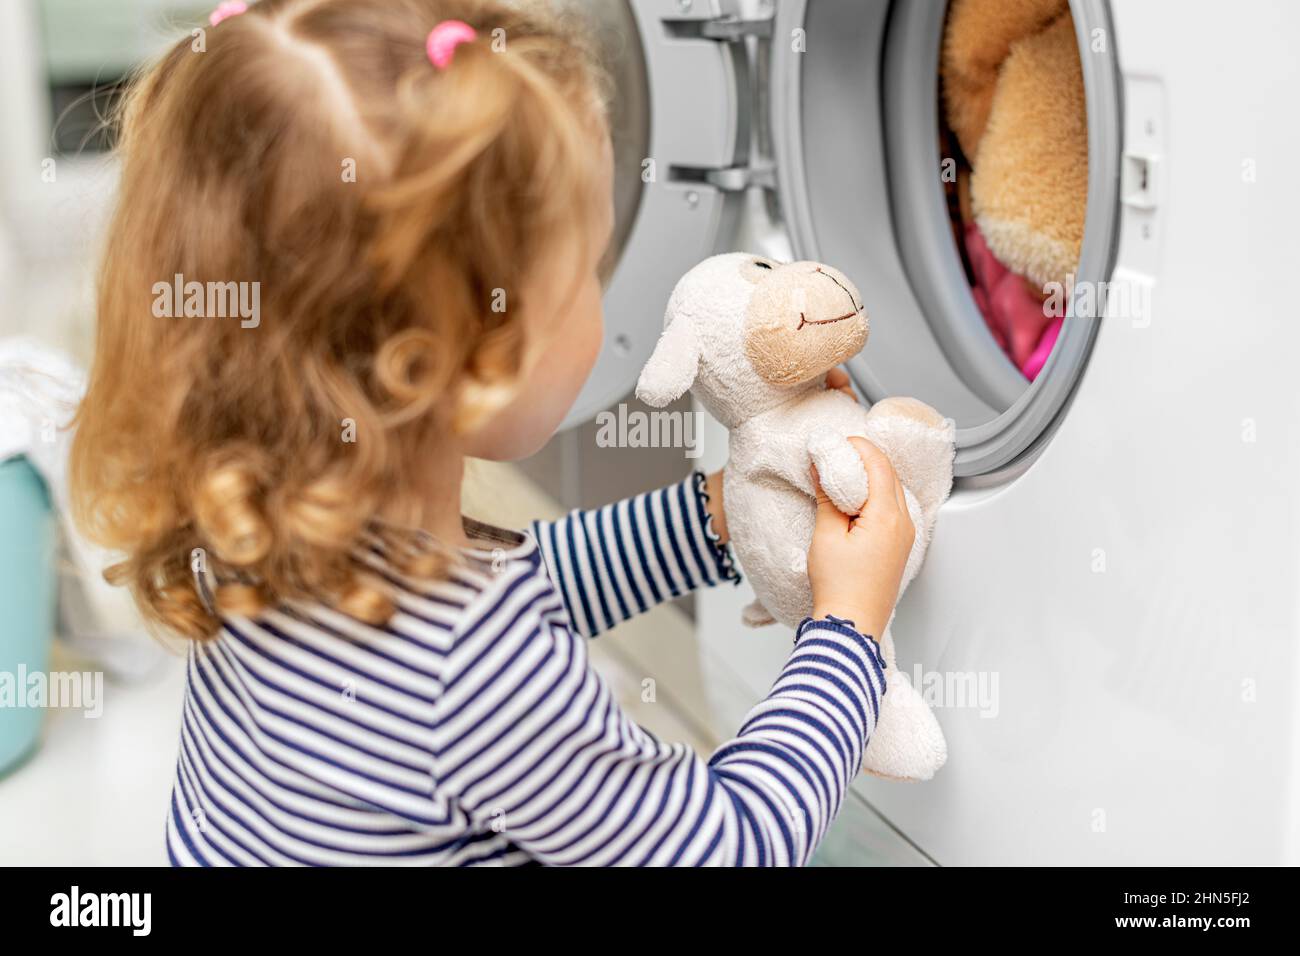 Il bambino guarda come sta lavando la lavatrice. Foto Stock